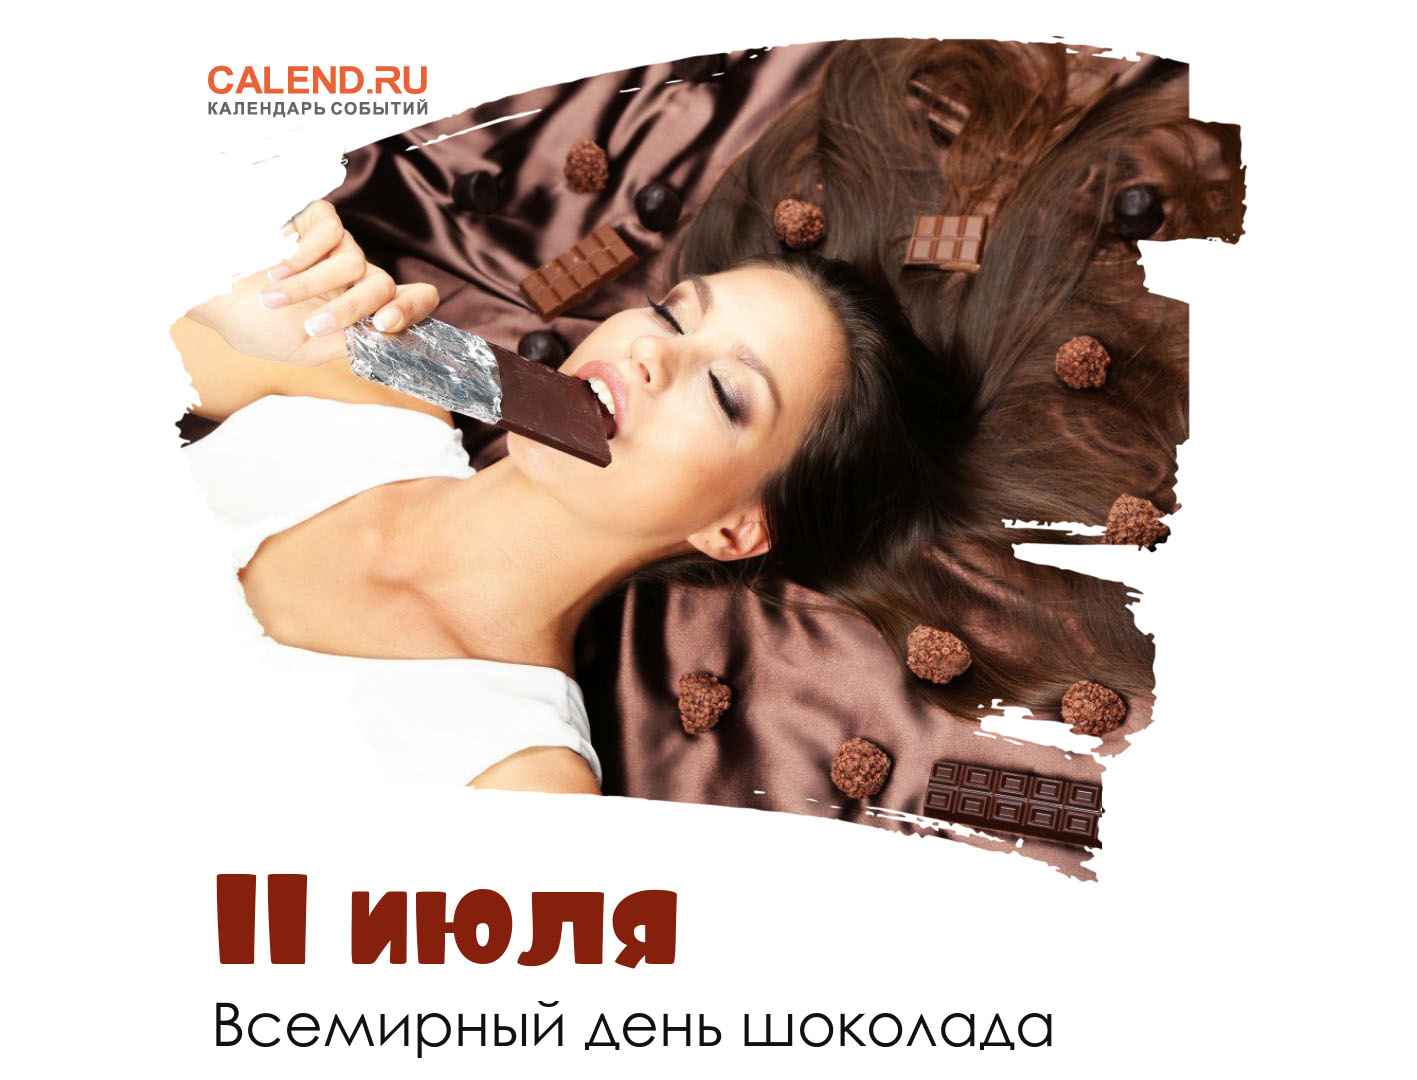 11 июля — Всемирный день шоколада / Открытка дня / Журнал Calend.ru